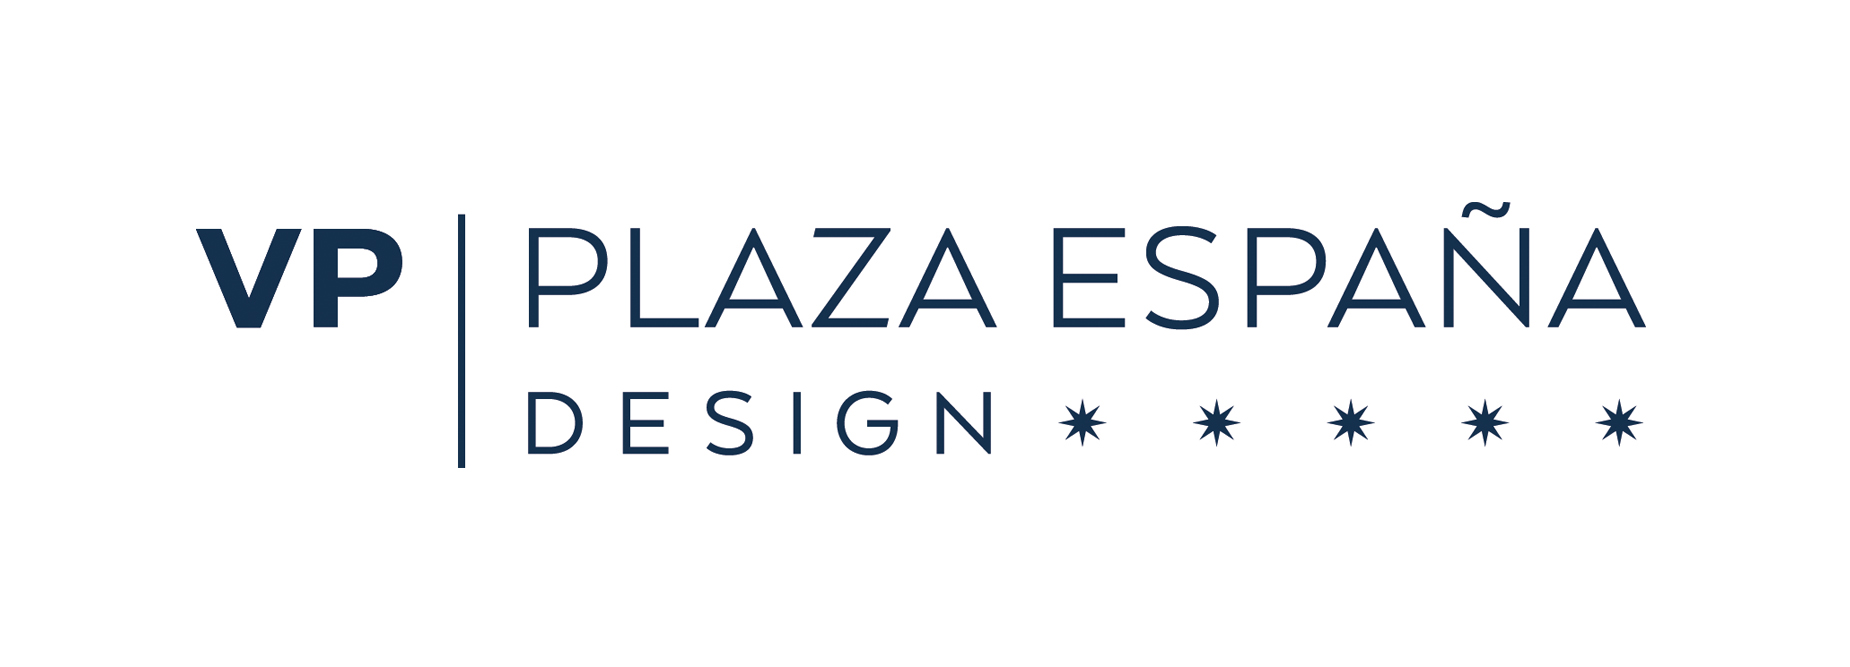 plaza españa design lp